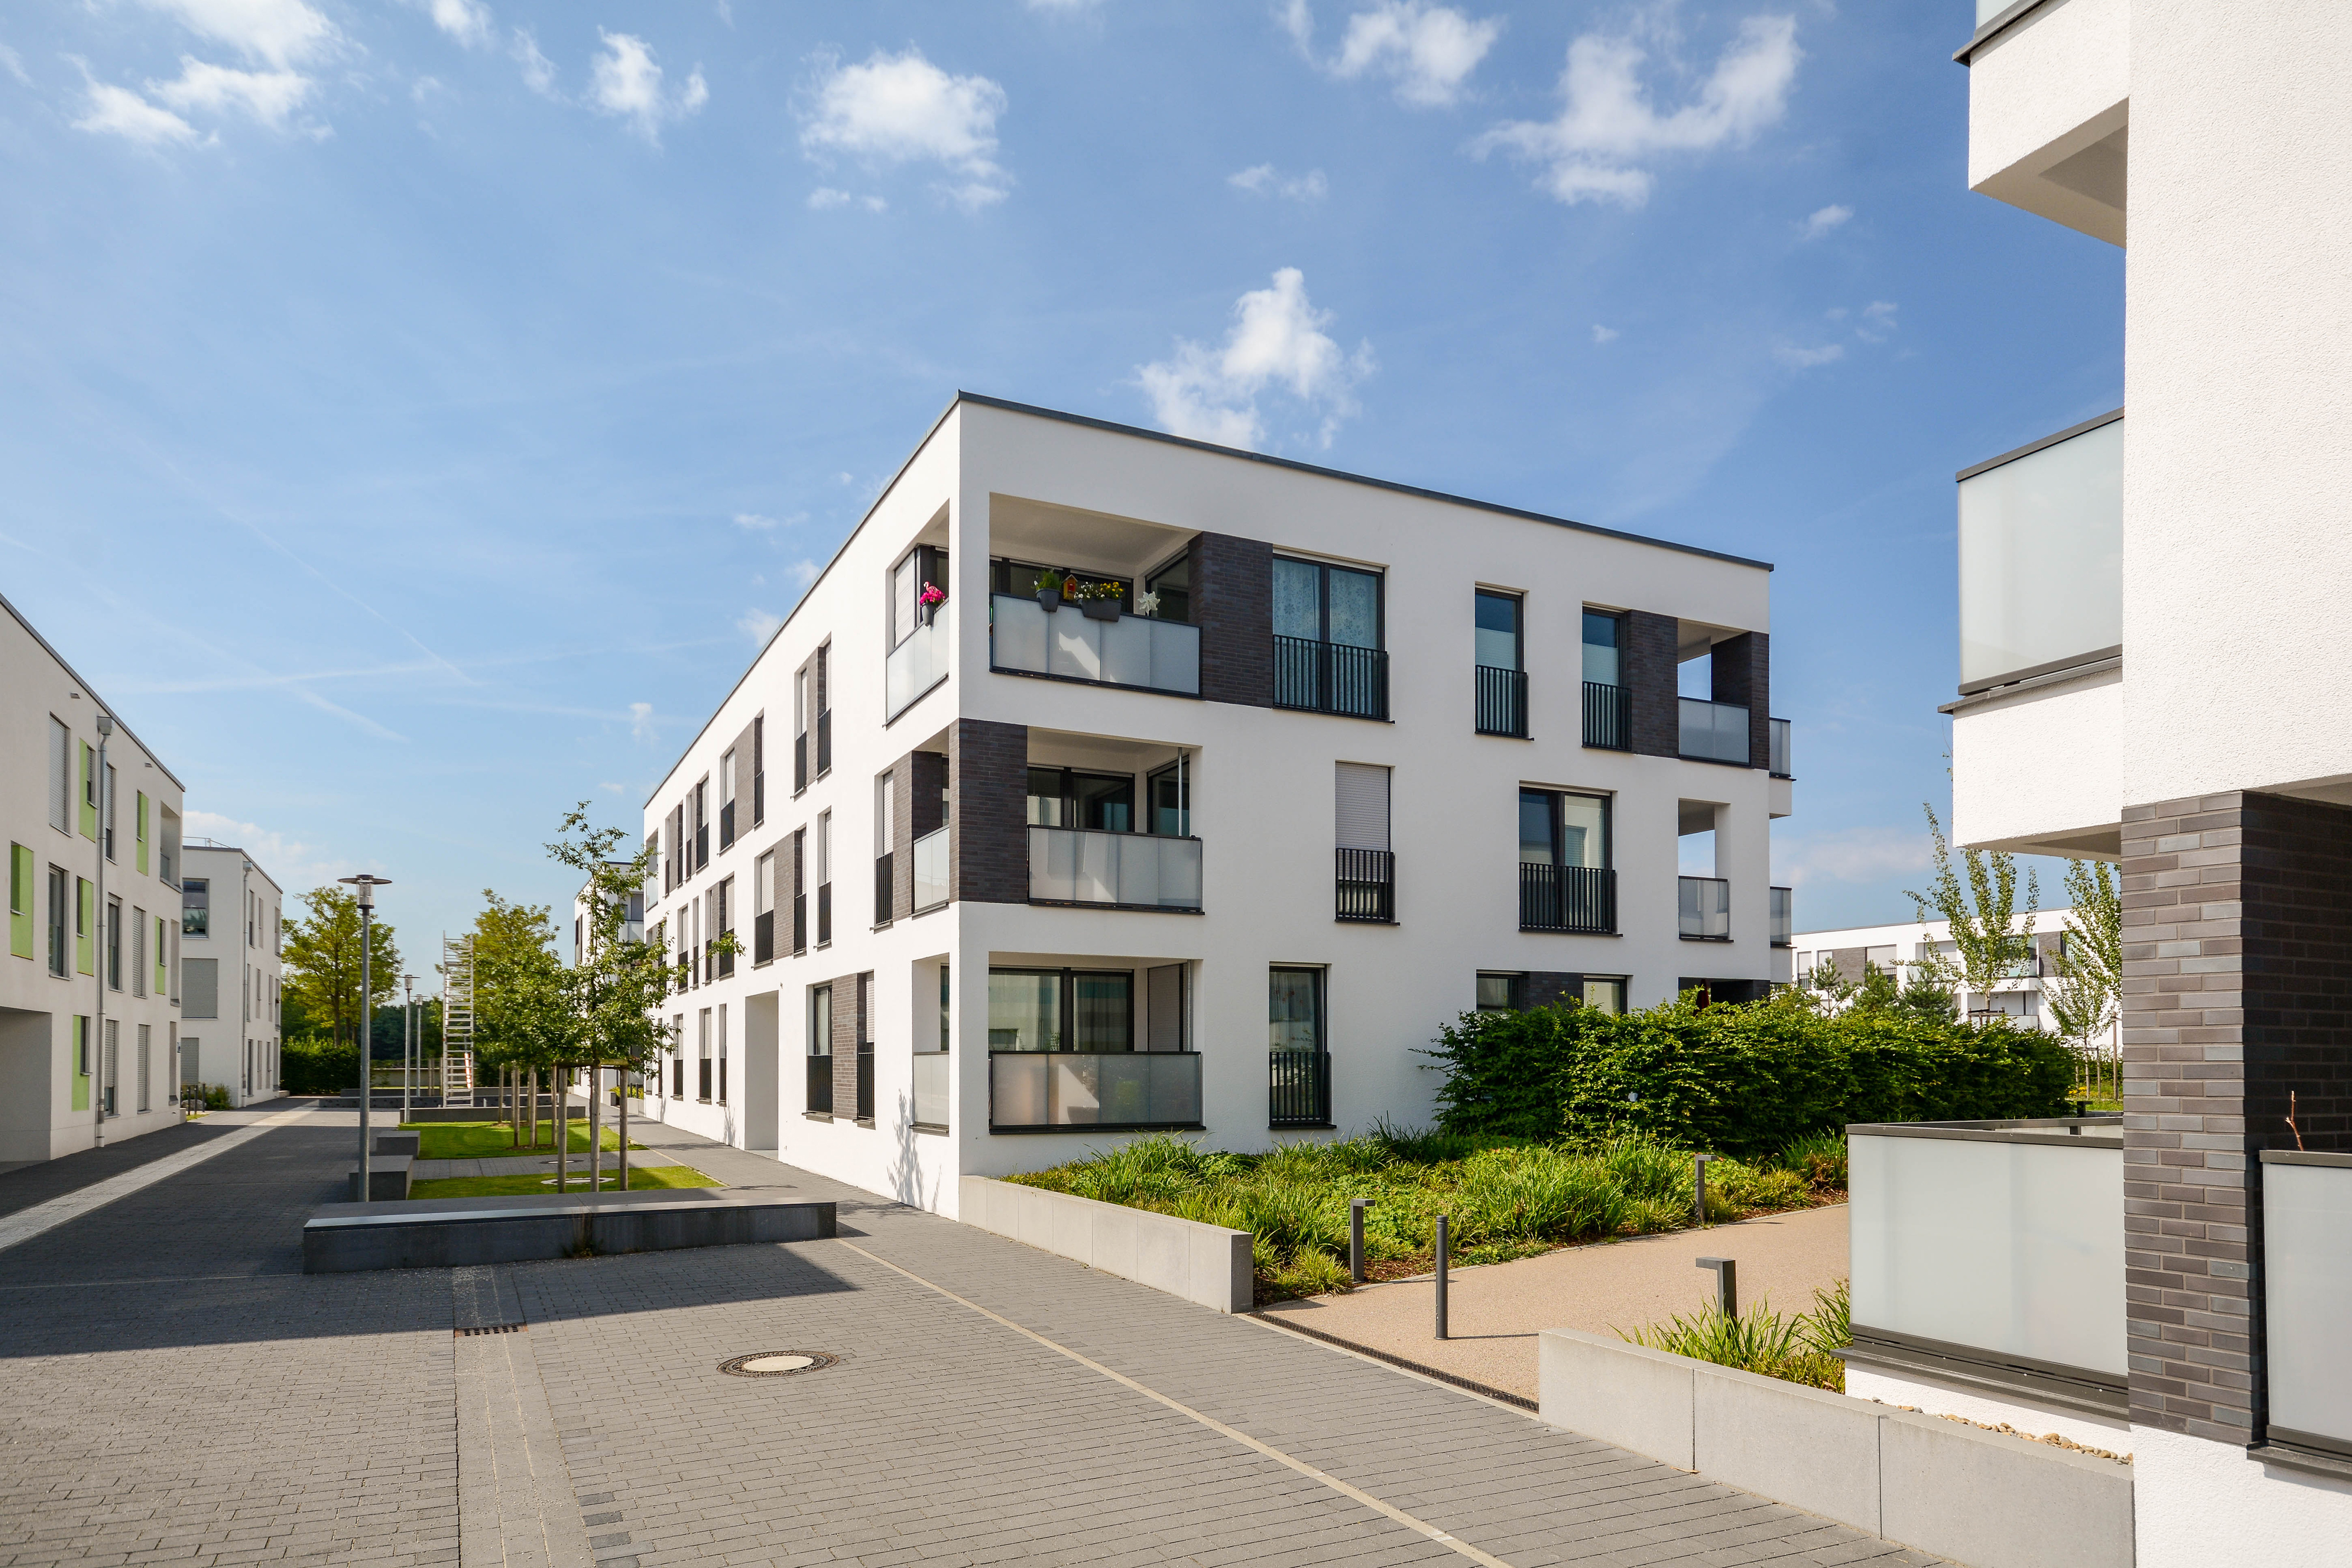 Wohnung verkaufen Titelbild-AdobeStock_214142861.jpeg Mit Immobilienmakler in Köln: 5 einfache Schritte um die eigene Wohnung in Köln schnell und sicher zu verkaufen